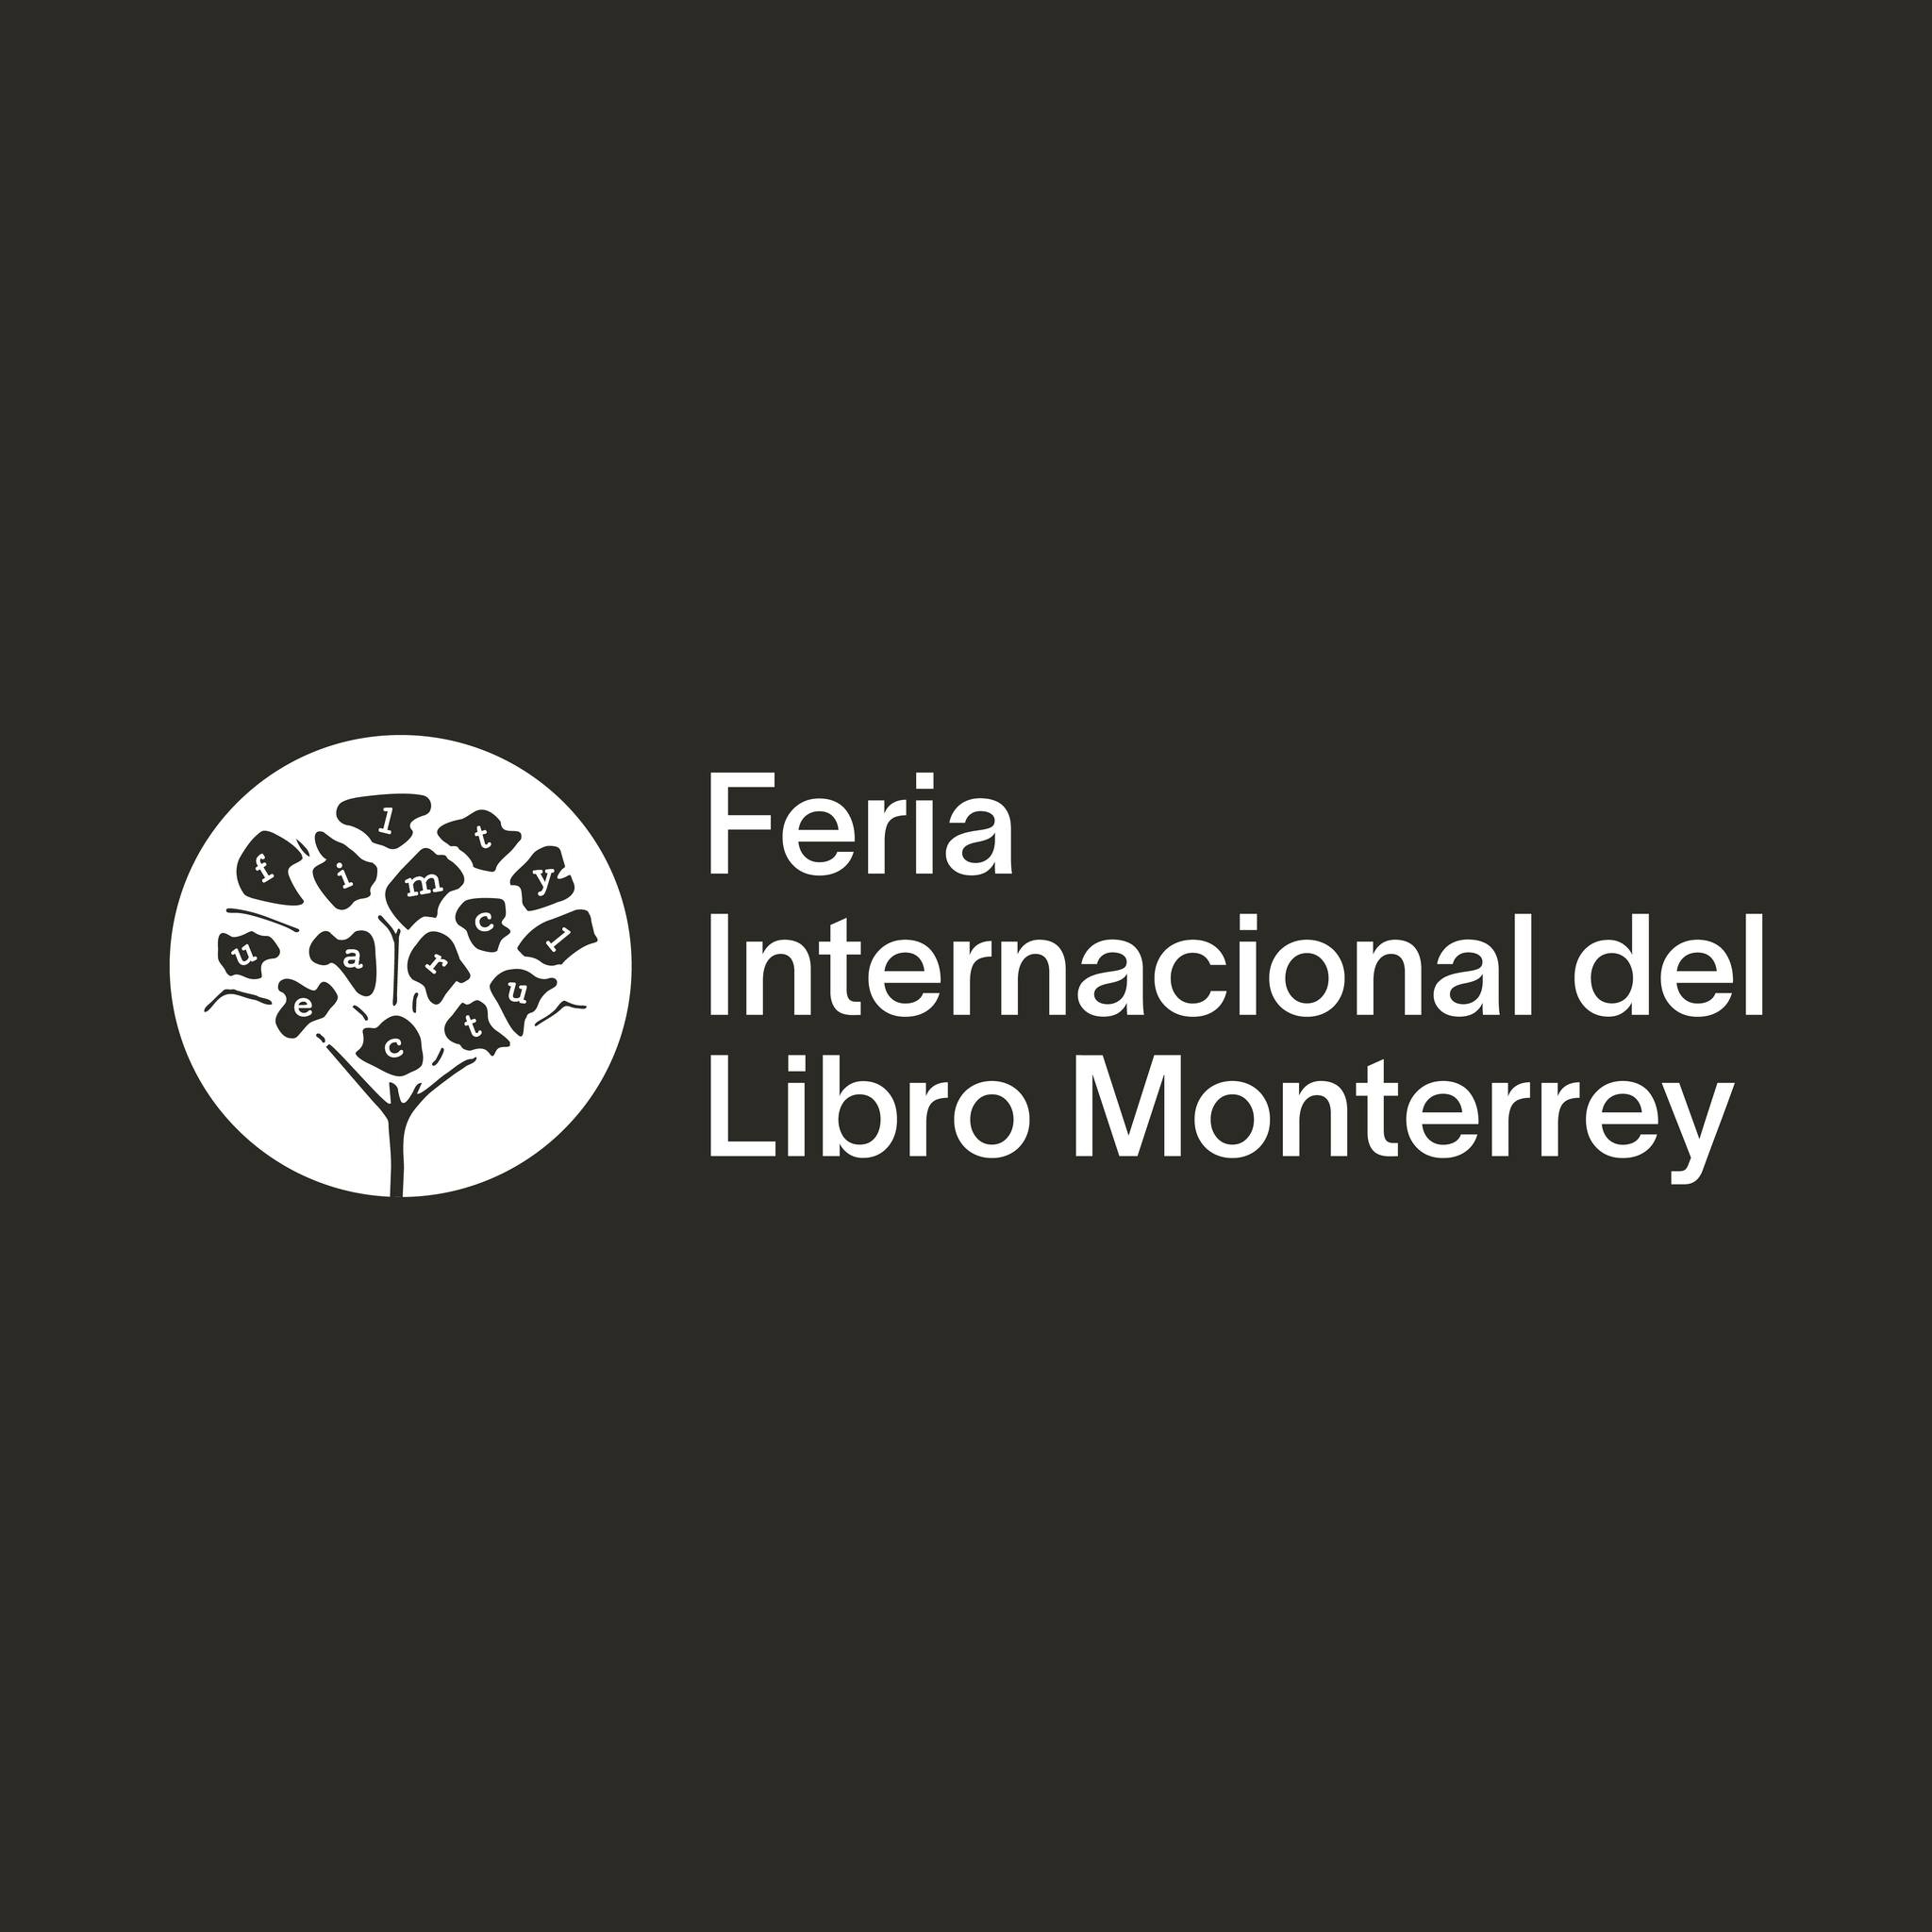 Feria Internacional del Libro Monterrey